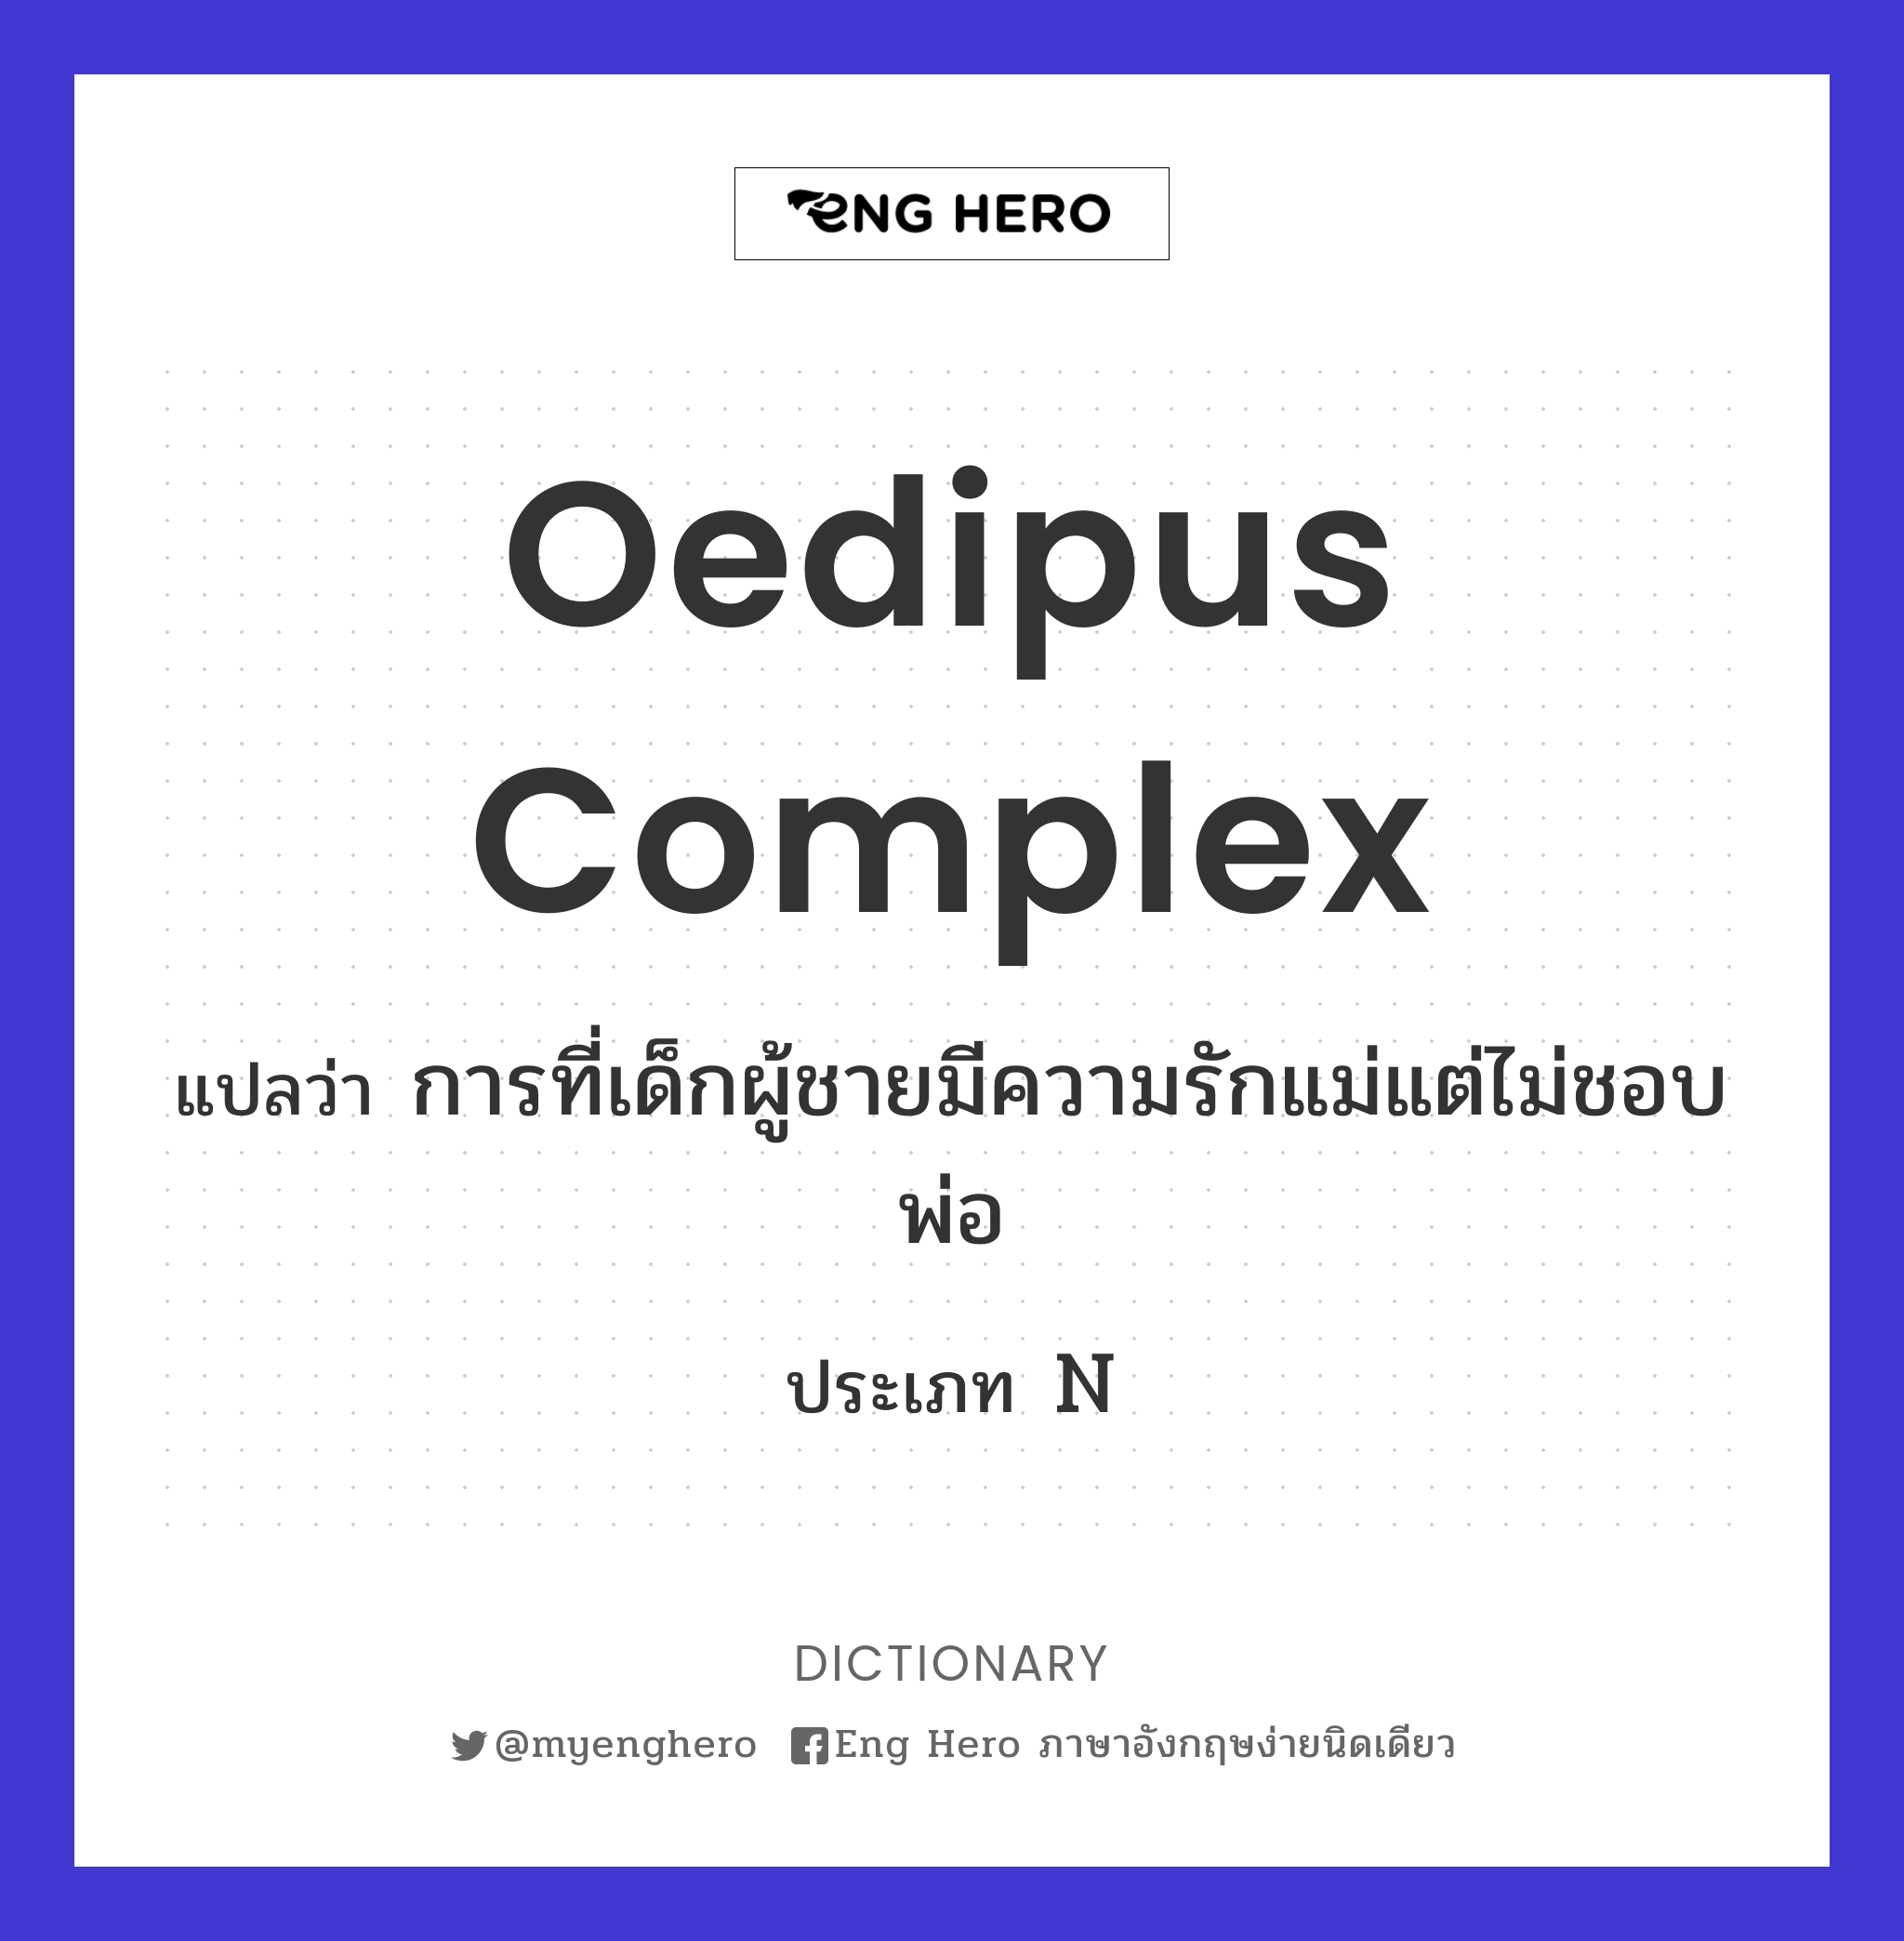 Oedipus complex